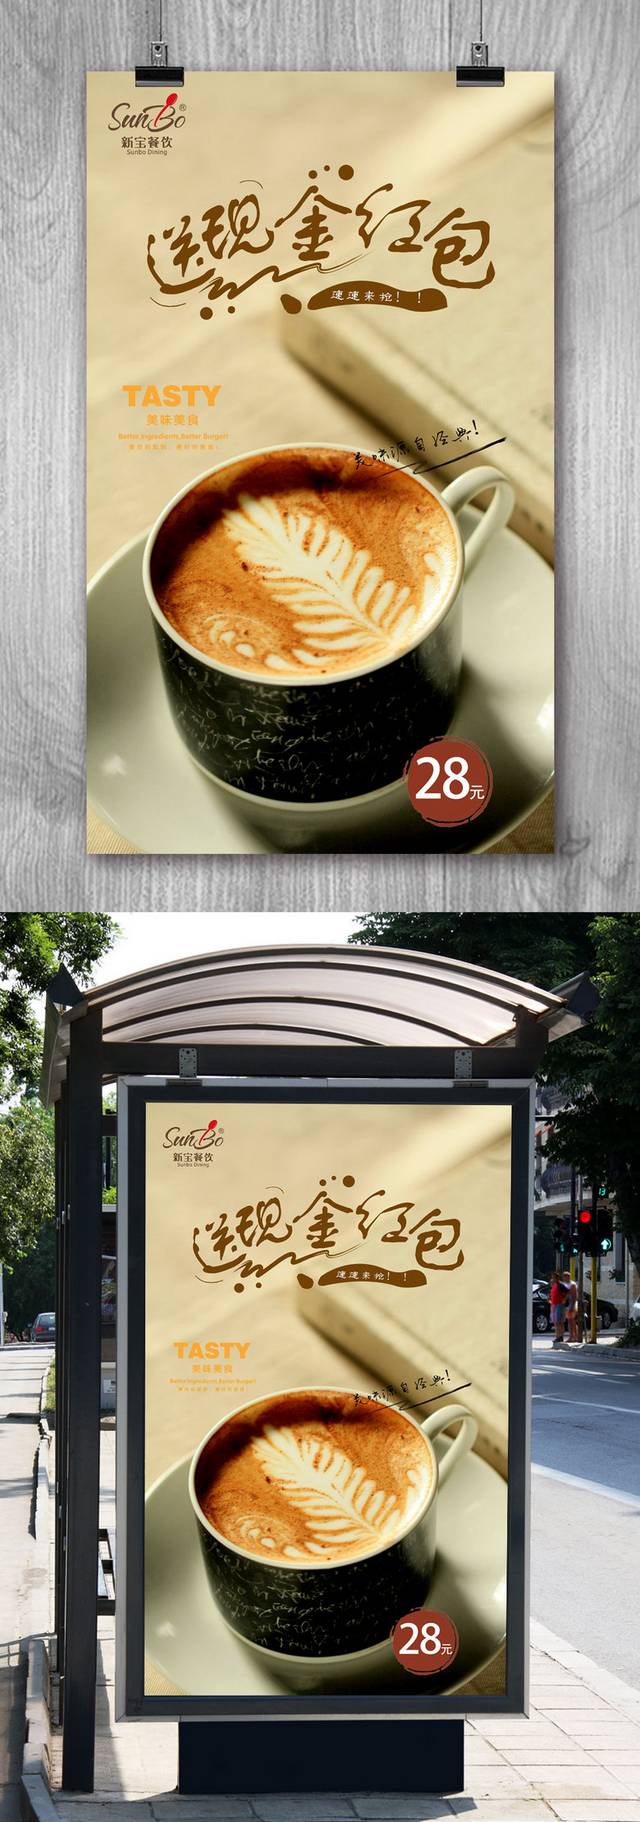 香浓咖啡馆摩卡海报设计